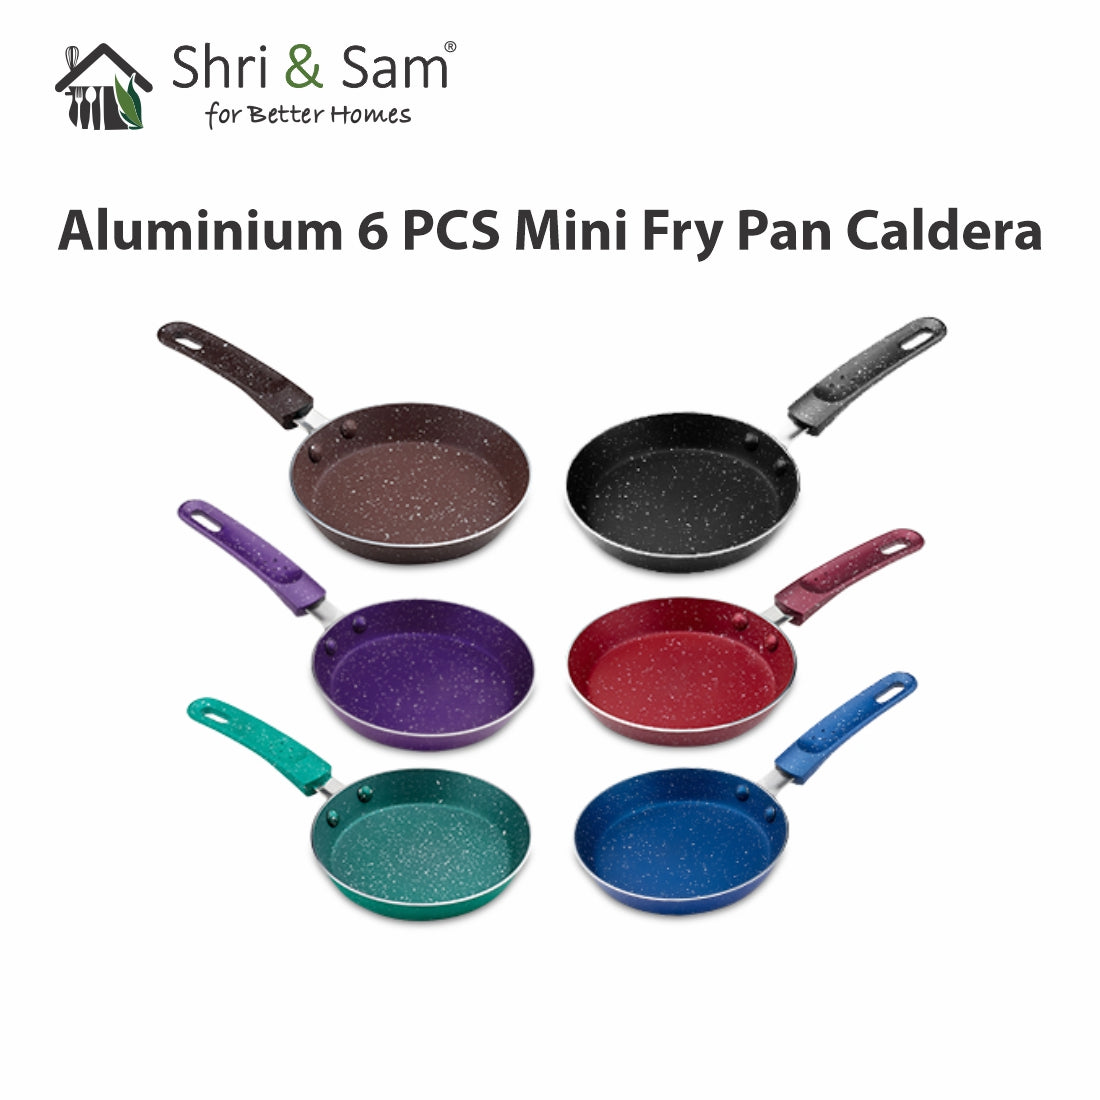 Aluminium 6 PCS Mini Fry Pan Caldera